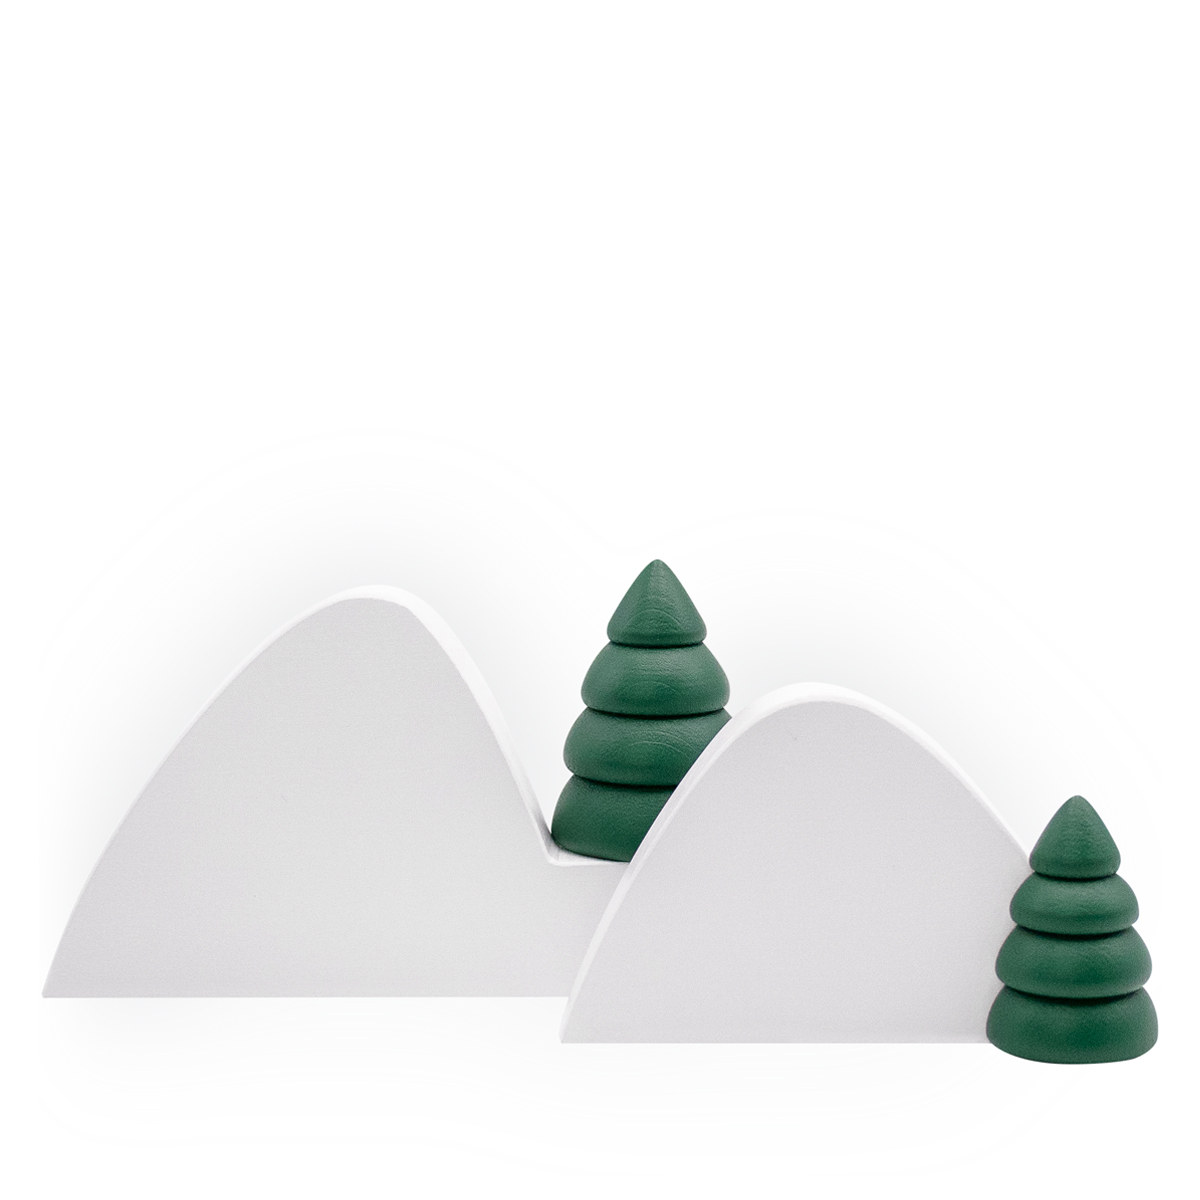 Miniatur | Winterlandschaft 1 mit zwei halben grünen Bäumen